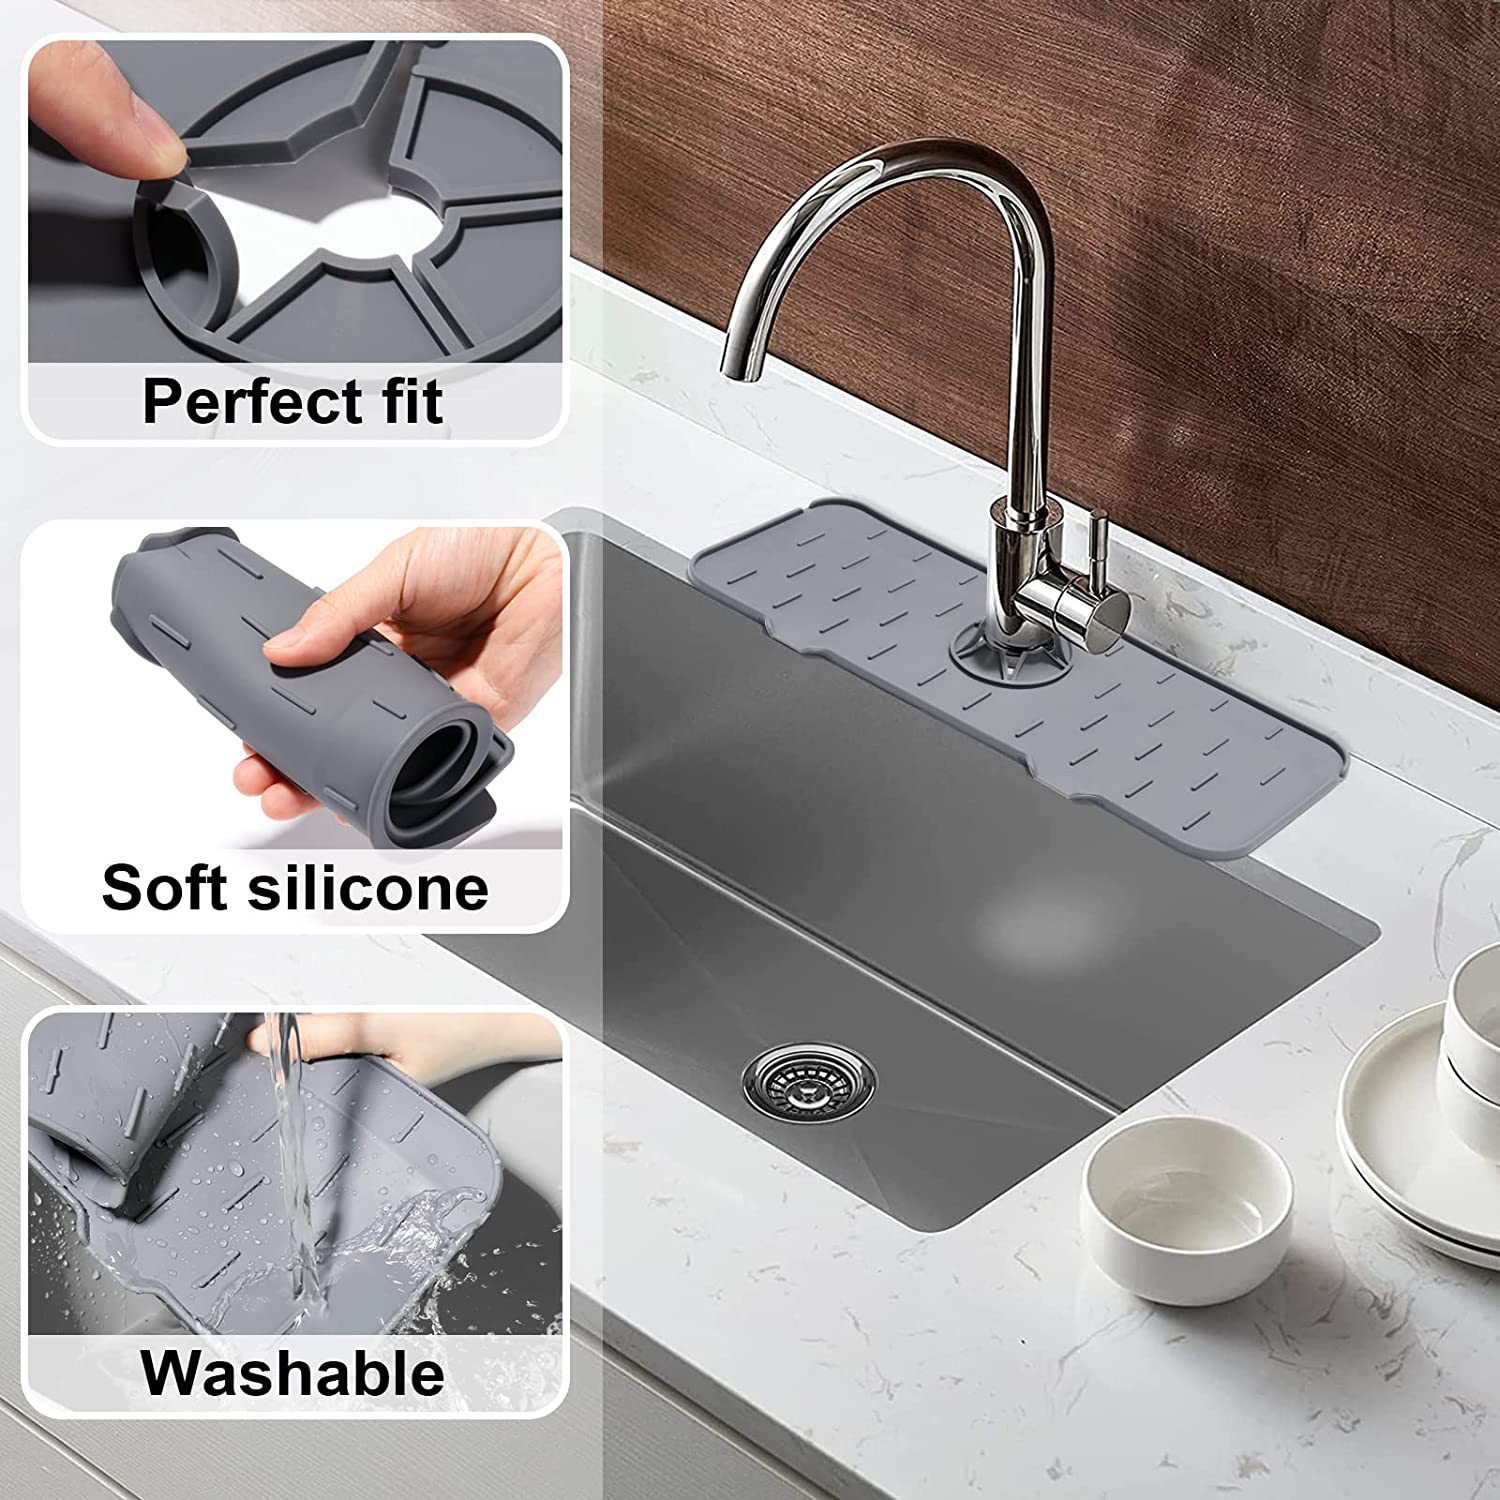 Būtinybė pasirinkti virtuvės silikoninį vandens išleidimo kilimėlį